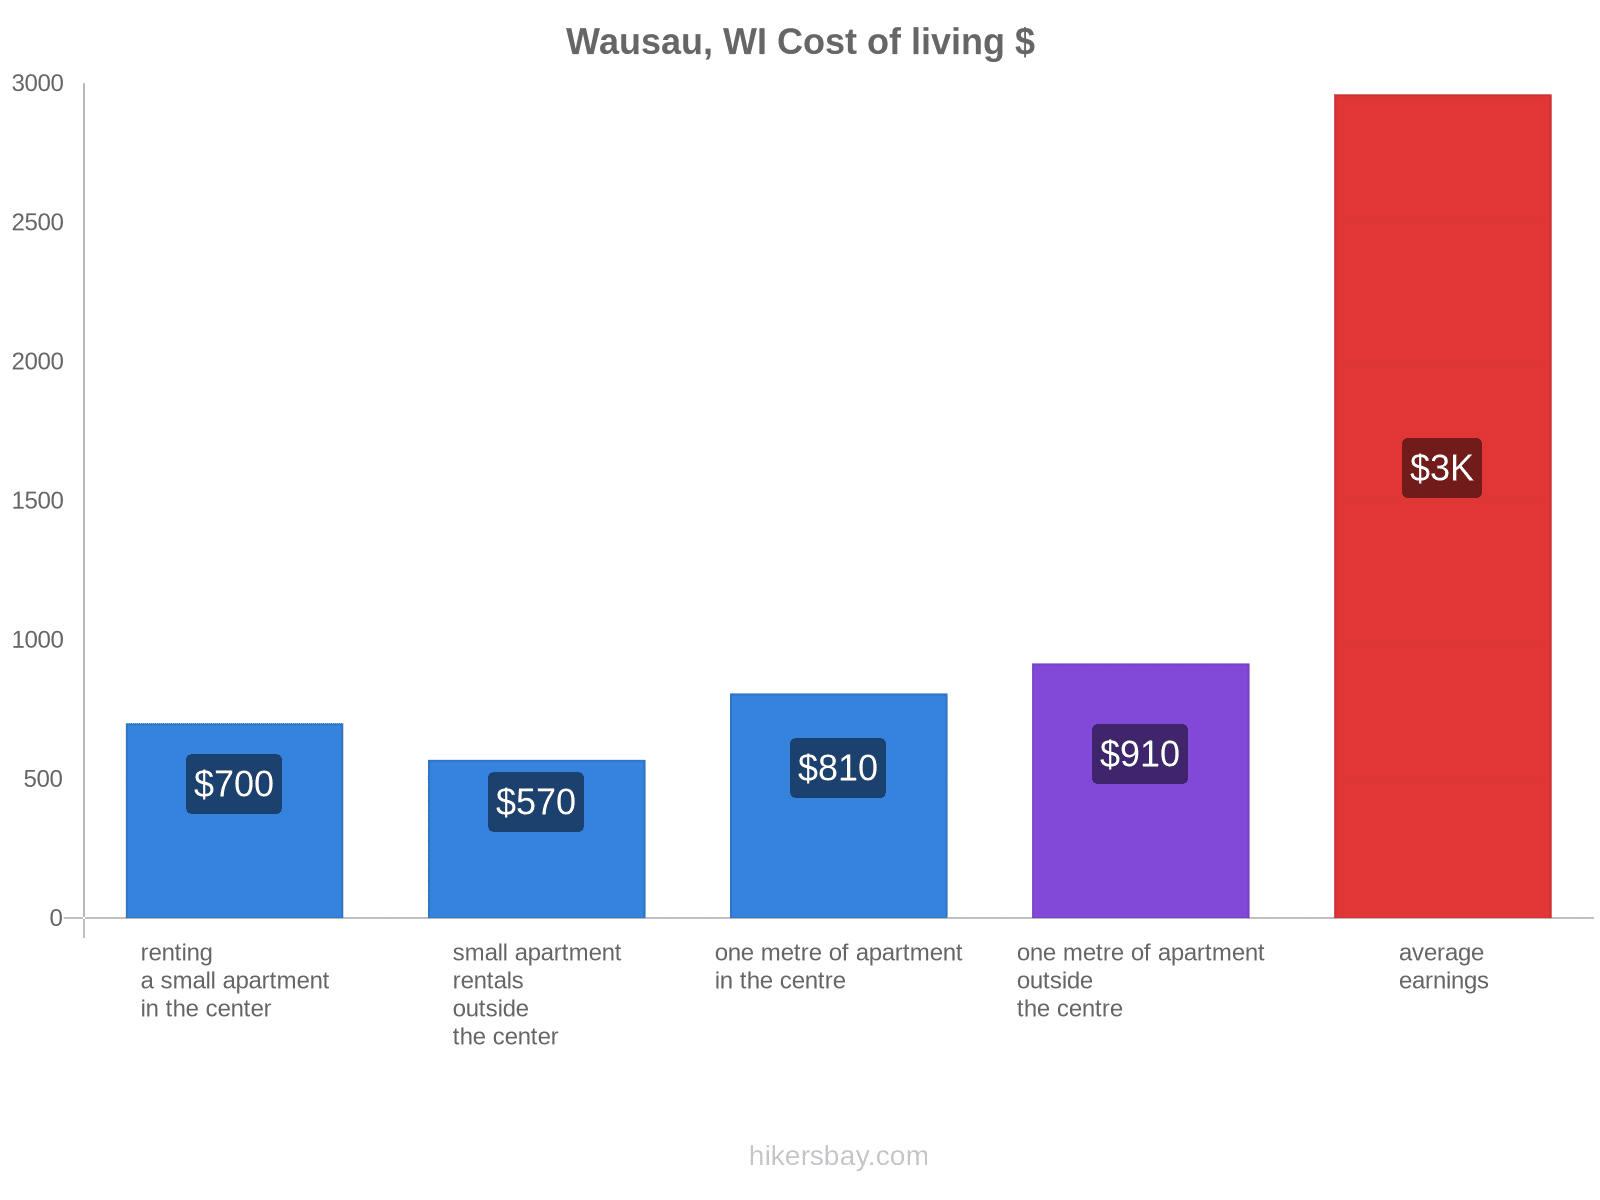 Wausau, WI cost of living hikersbay.com